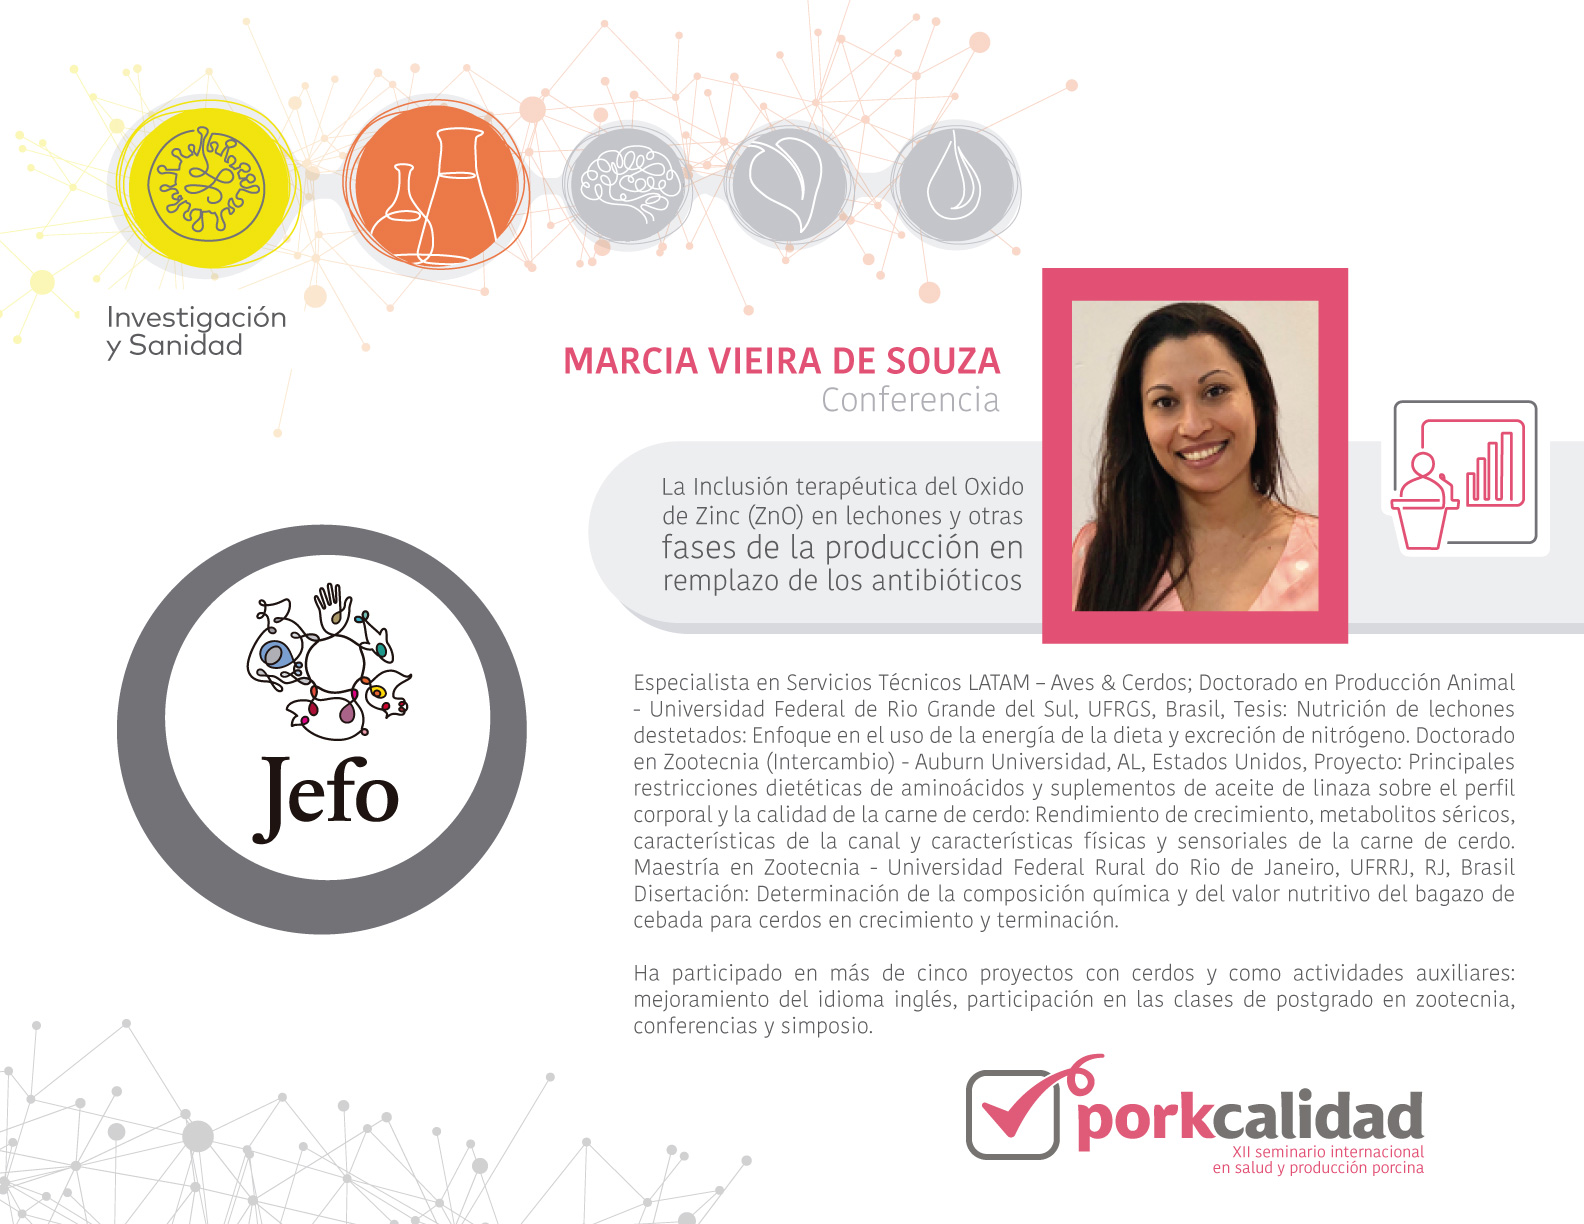 Porkcalidad2019_Jefo_MarciaVieira